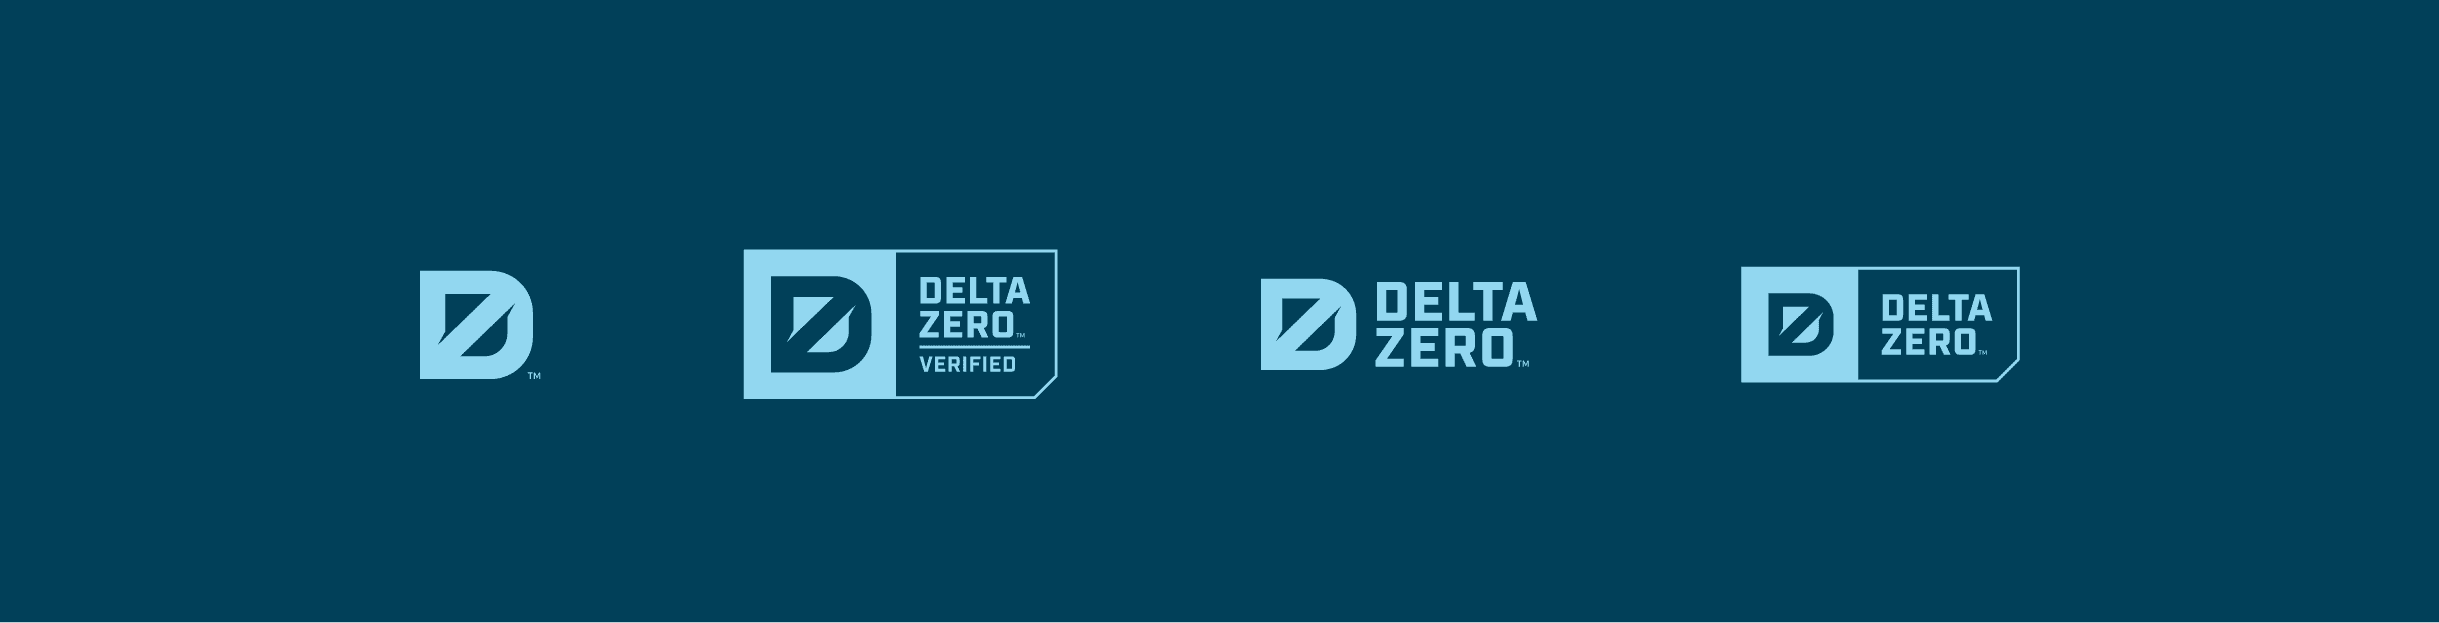 Eagle Protect Delta Zero logos